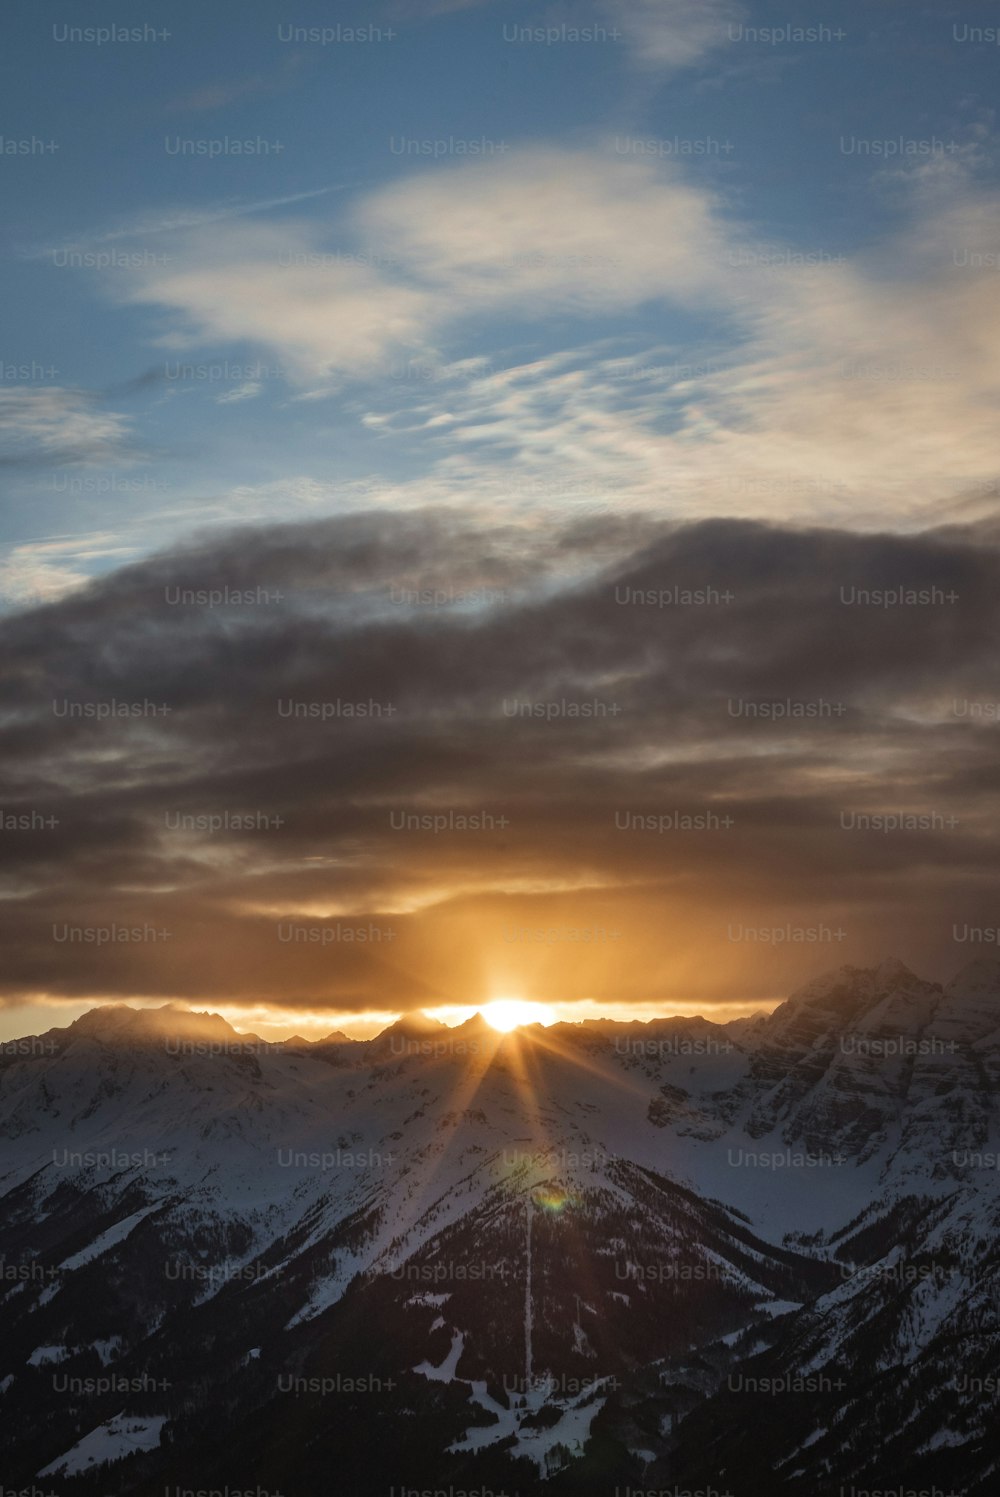 Le soleil se couche sur les montagnes enneigées